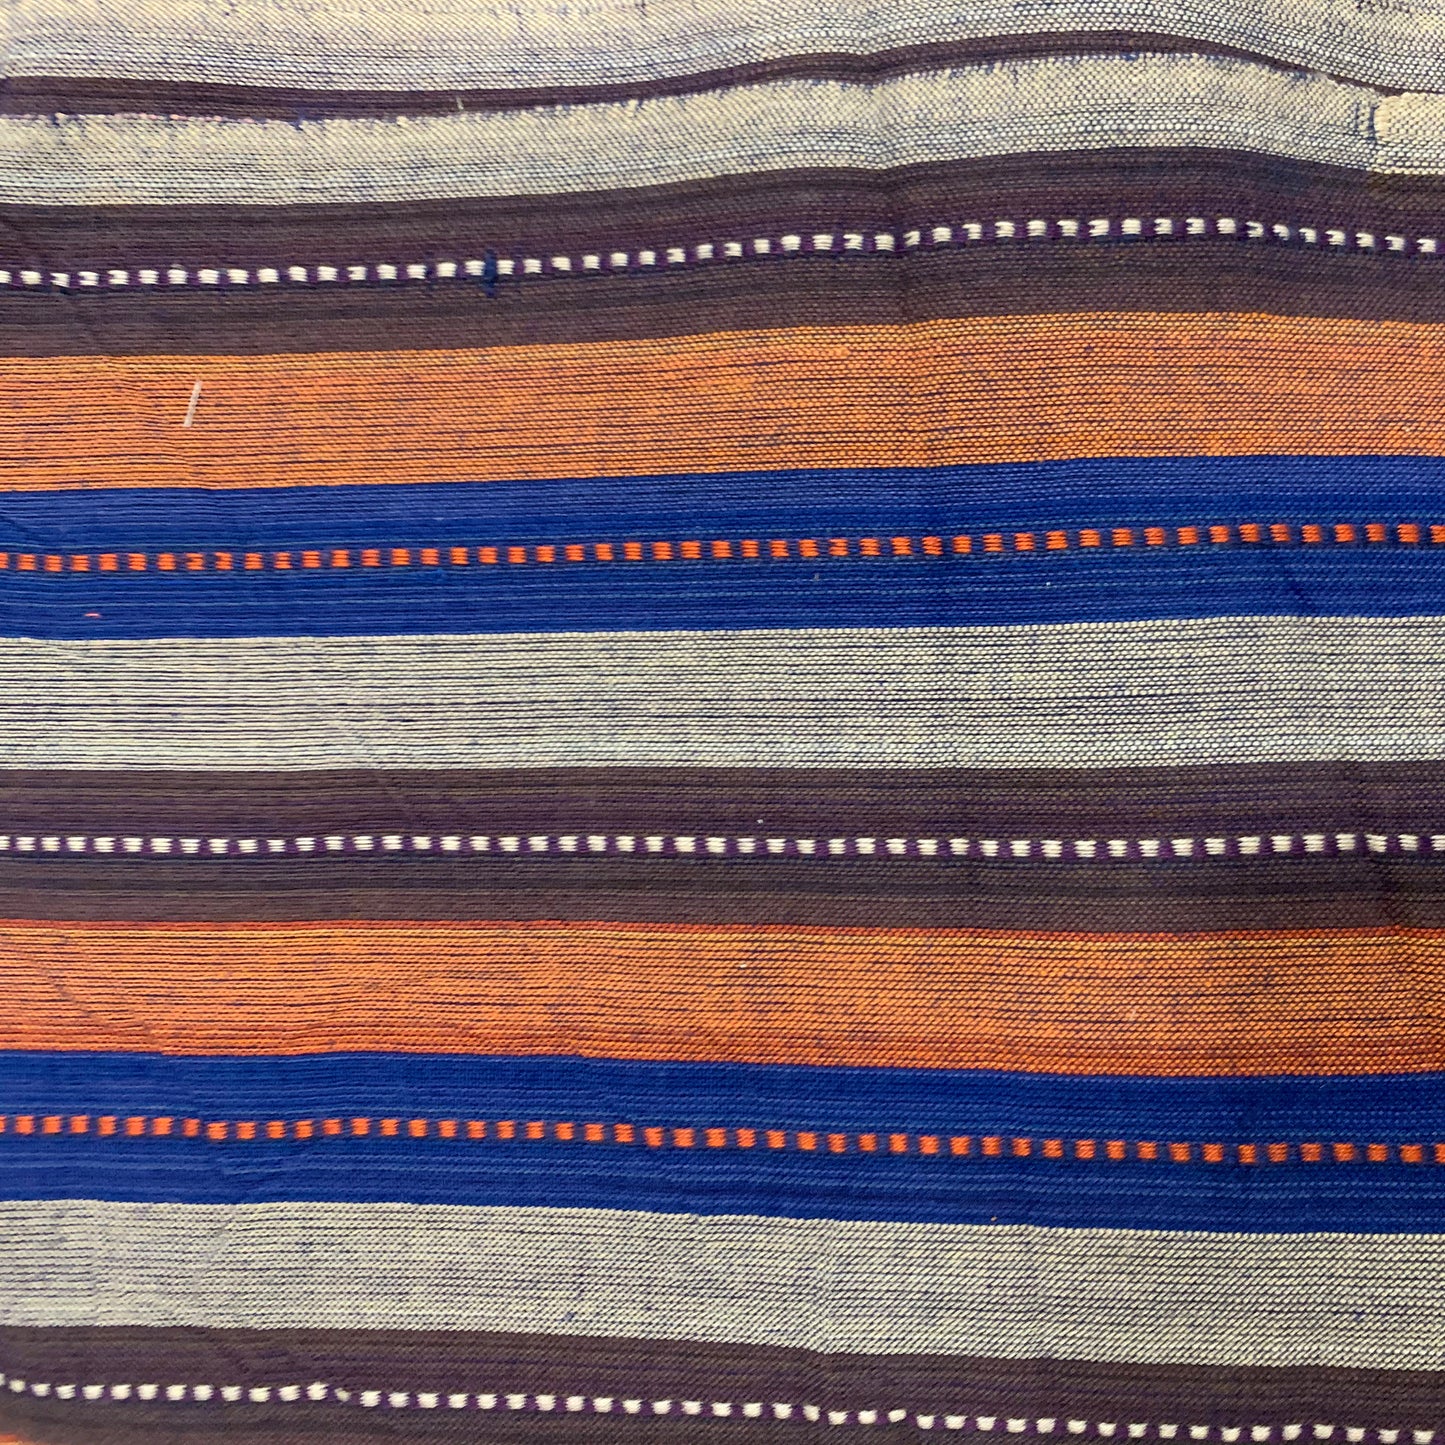 Multicoloured Striped Cotton Fabric